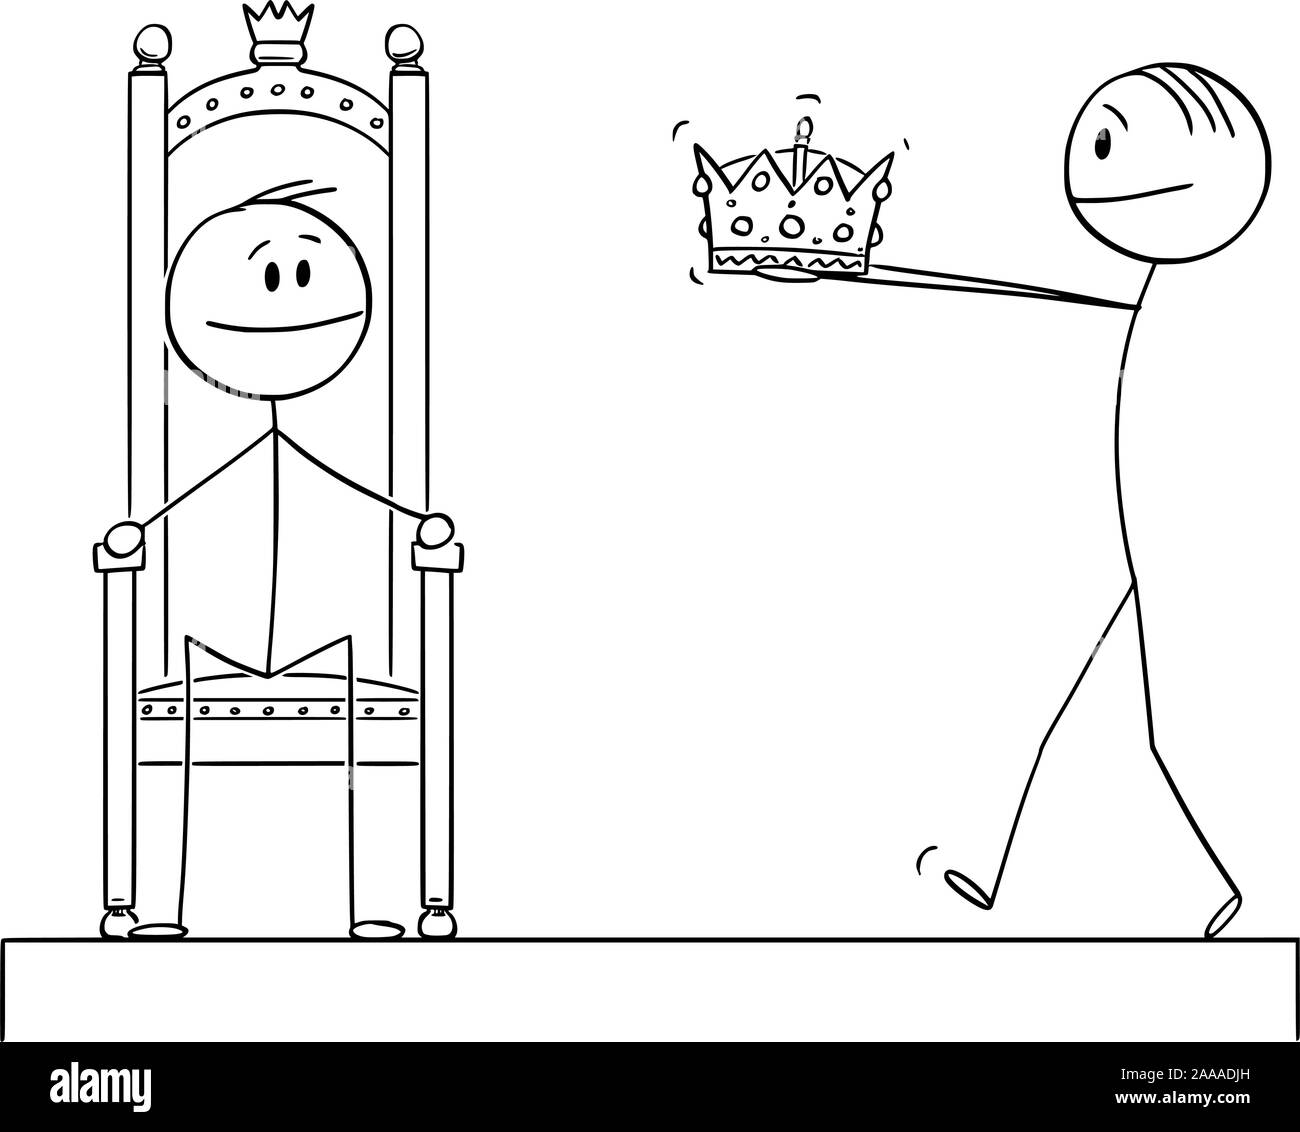 Vektor cartoon Strichmännchen Zeichnen konzeptionelle Darstellung der Mann, der die Krone des Königs oder Königreich während der Krönung oder Krönung Zeremonie zu Mann sitzt auf Thron. Stock Vektor